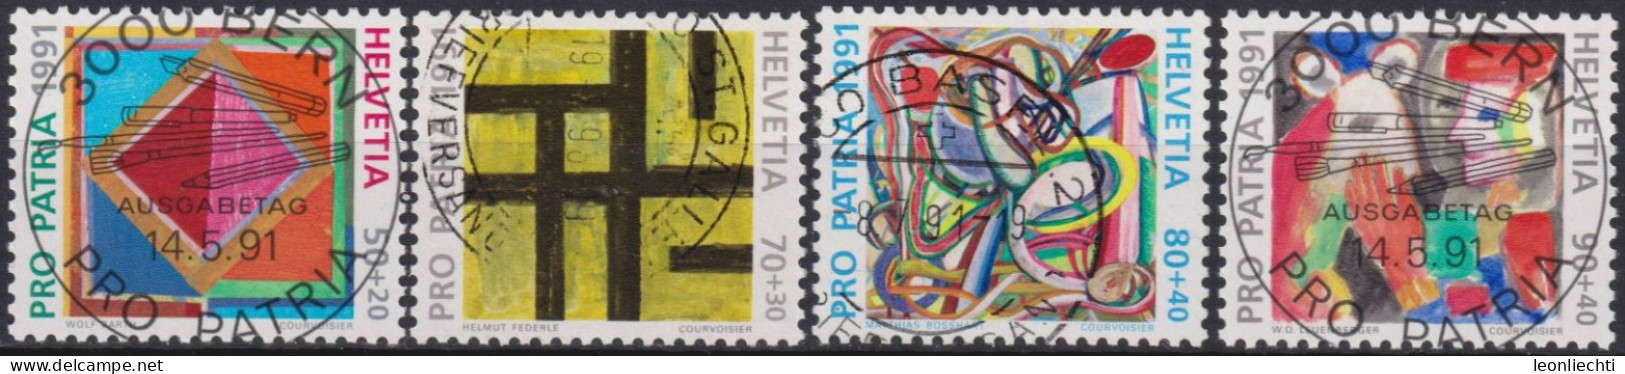 1991 Schweiz Pro Patria, Zeitgenössische Kunst, ⵙ Zum:CH B231-234, Mi:CH 1446-1449 Yt: CH 1474-1377 - Oblitérés